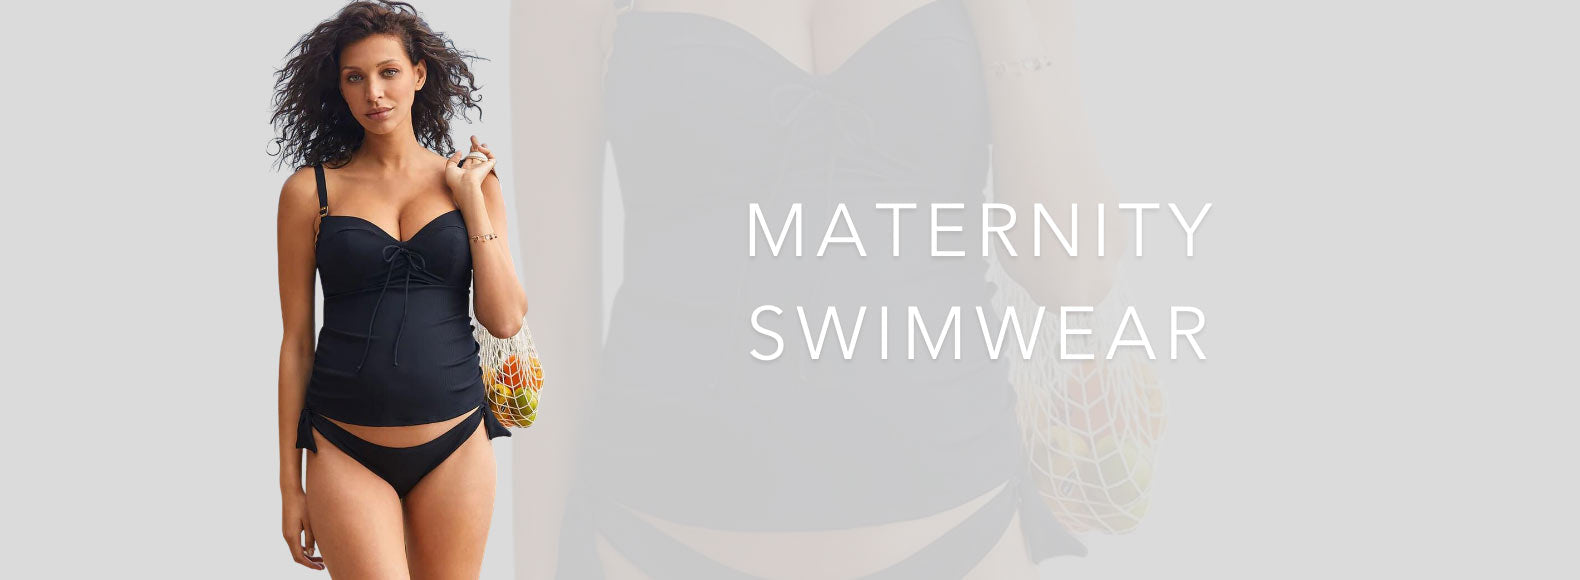 https://cdn.shopify.com/s/files/1/0220/7200/files/maternity-swimwear.jpg?v=1695719934